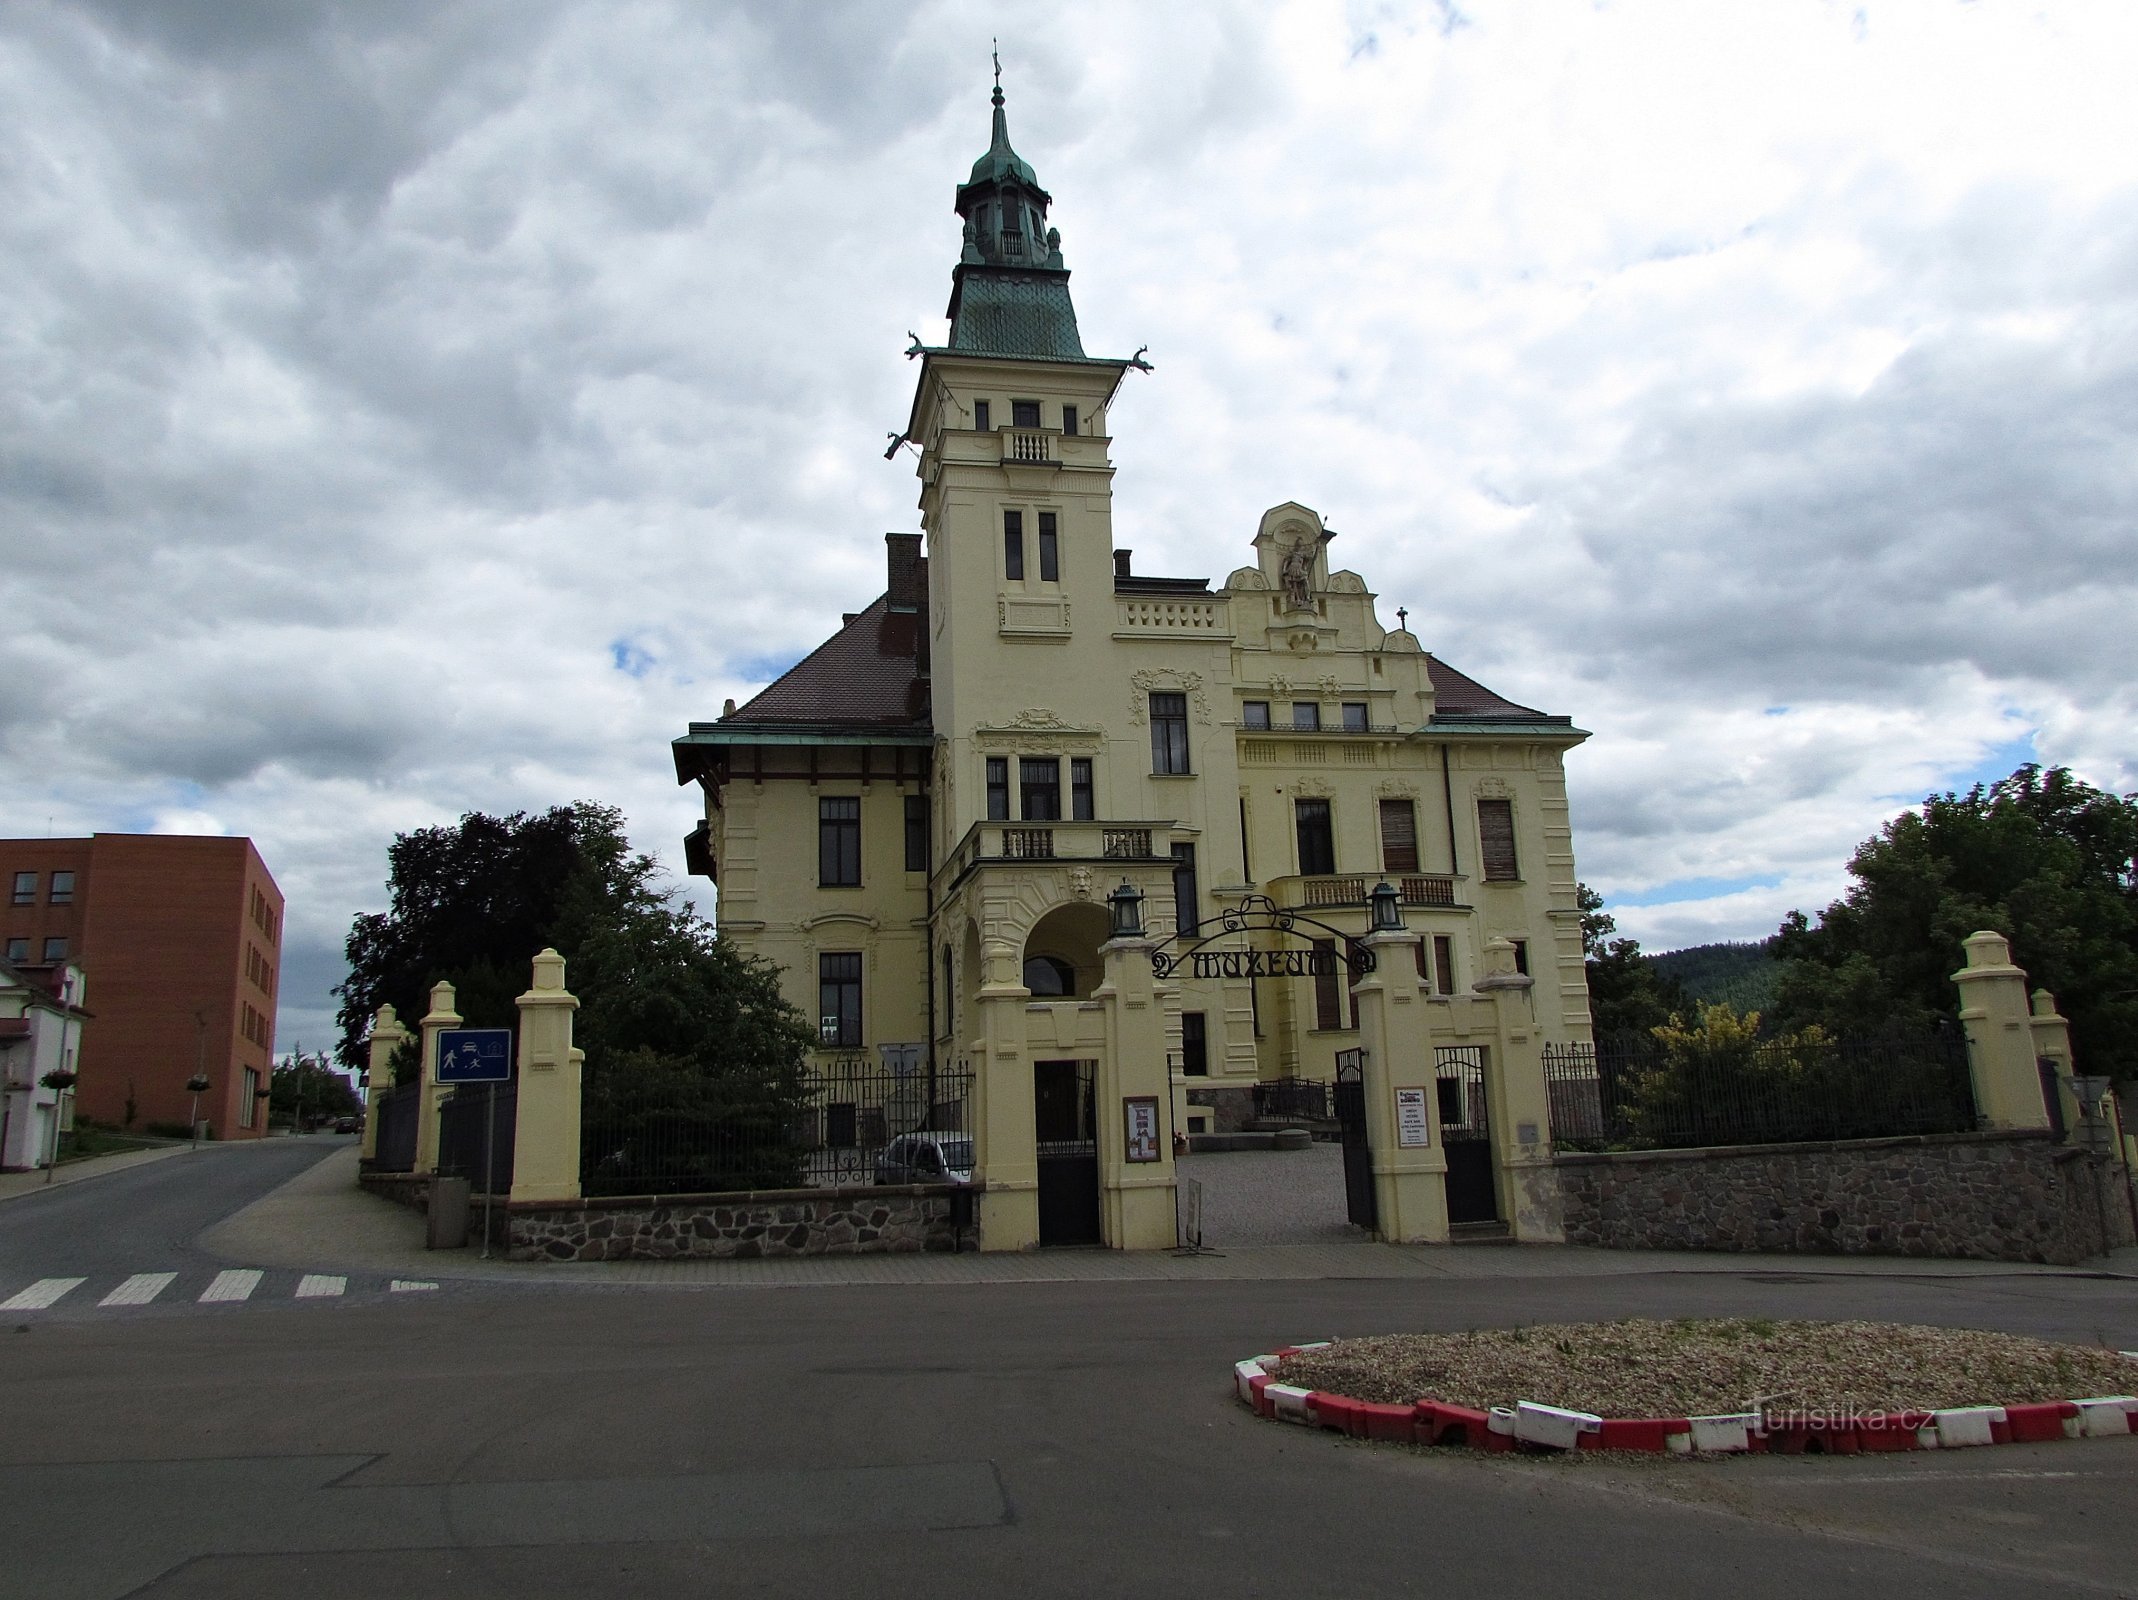 Ústí nad Orlicí - a vila do maior empresário